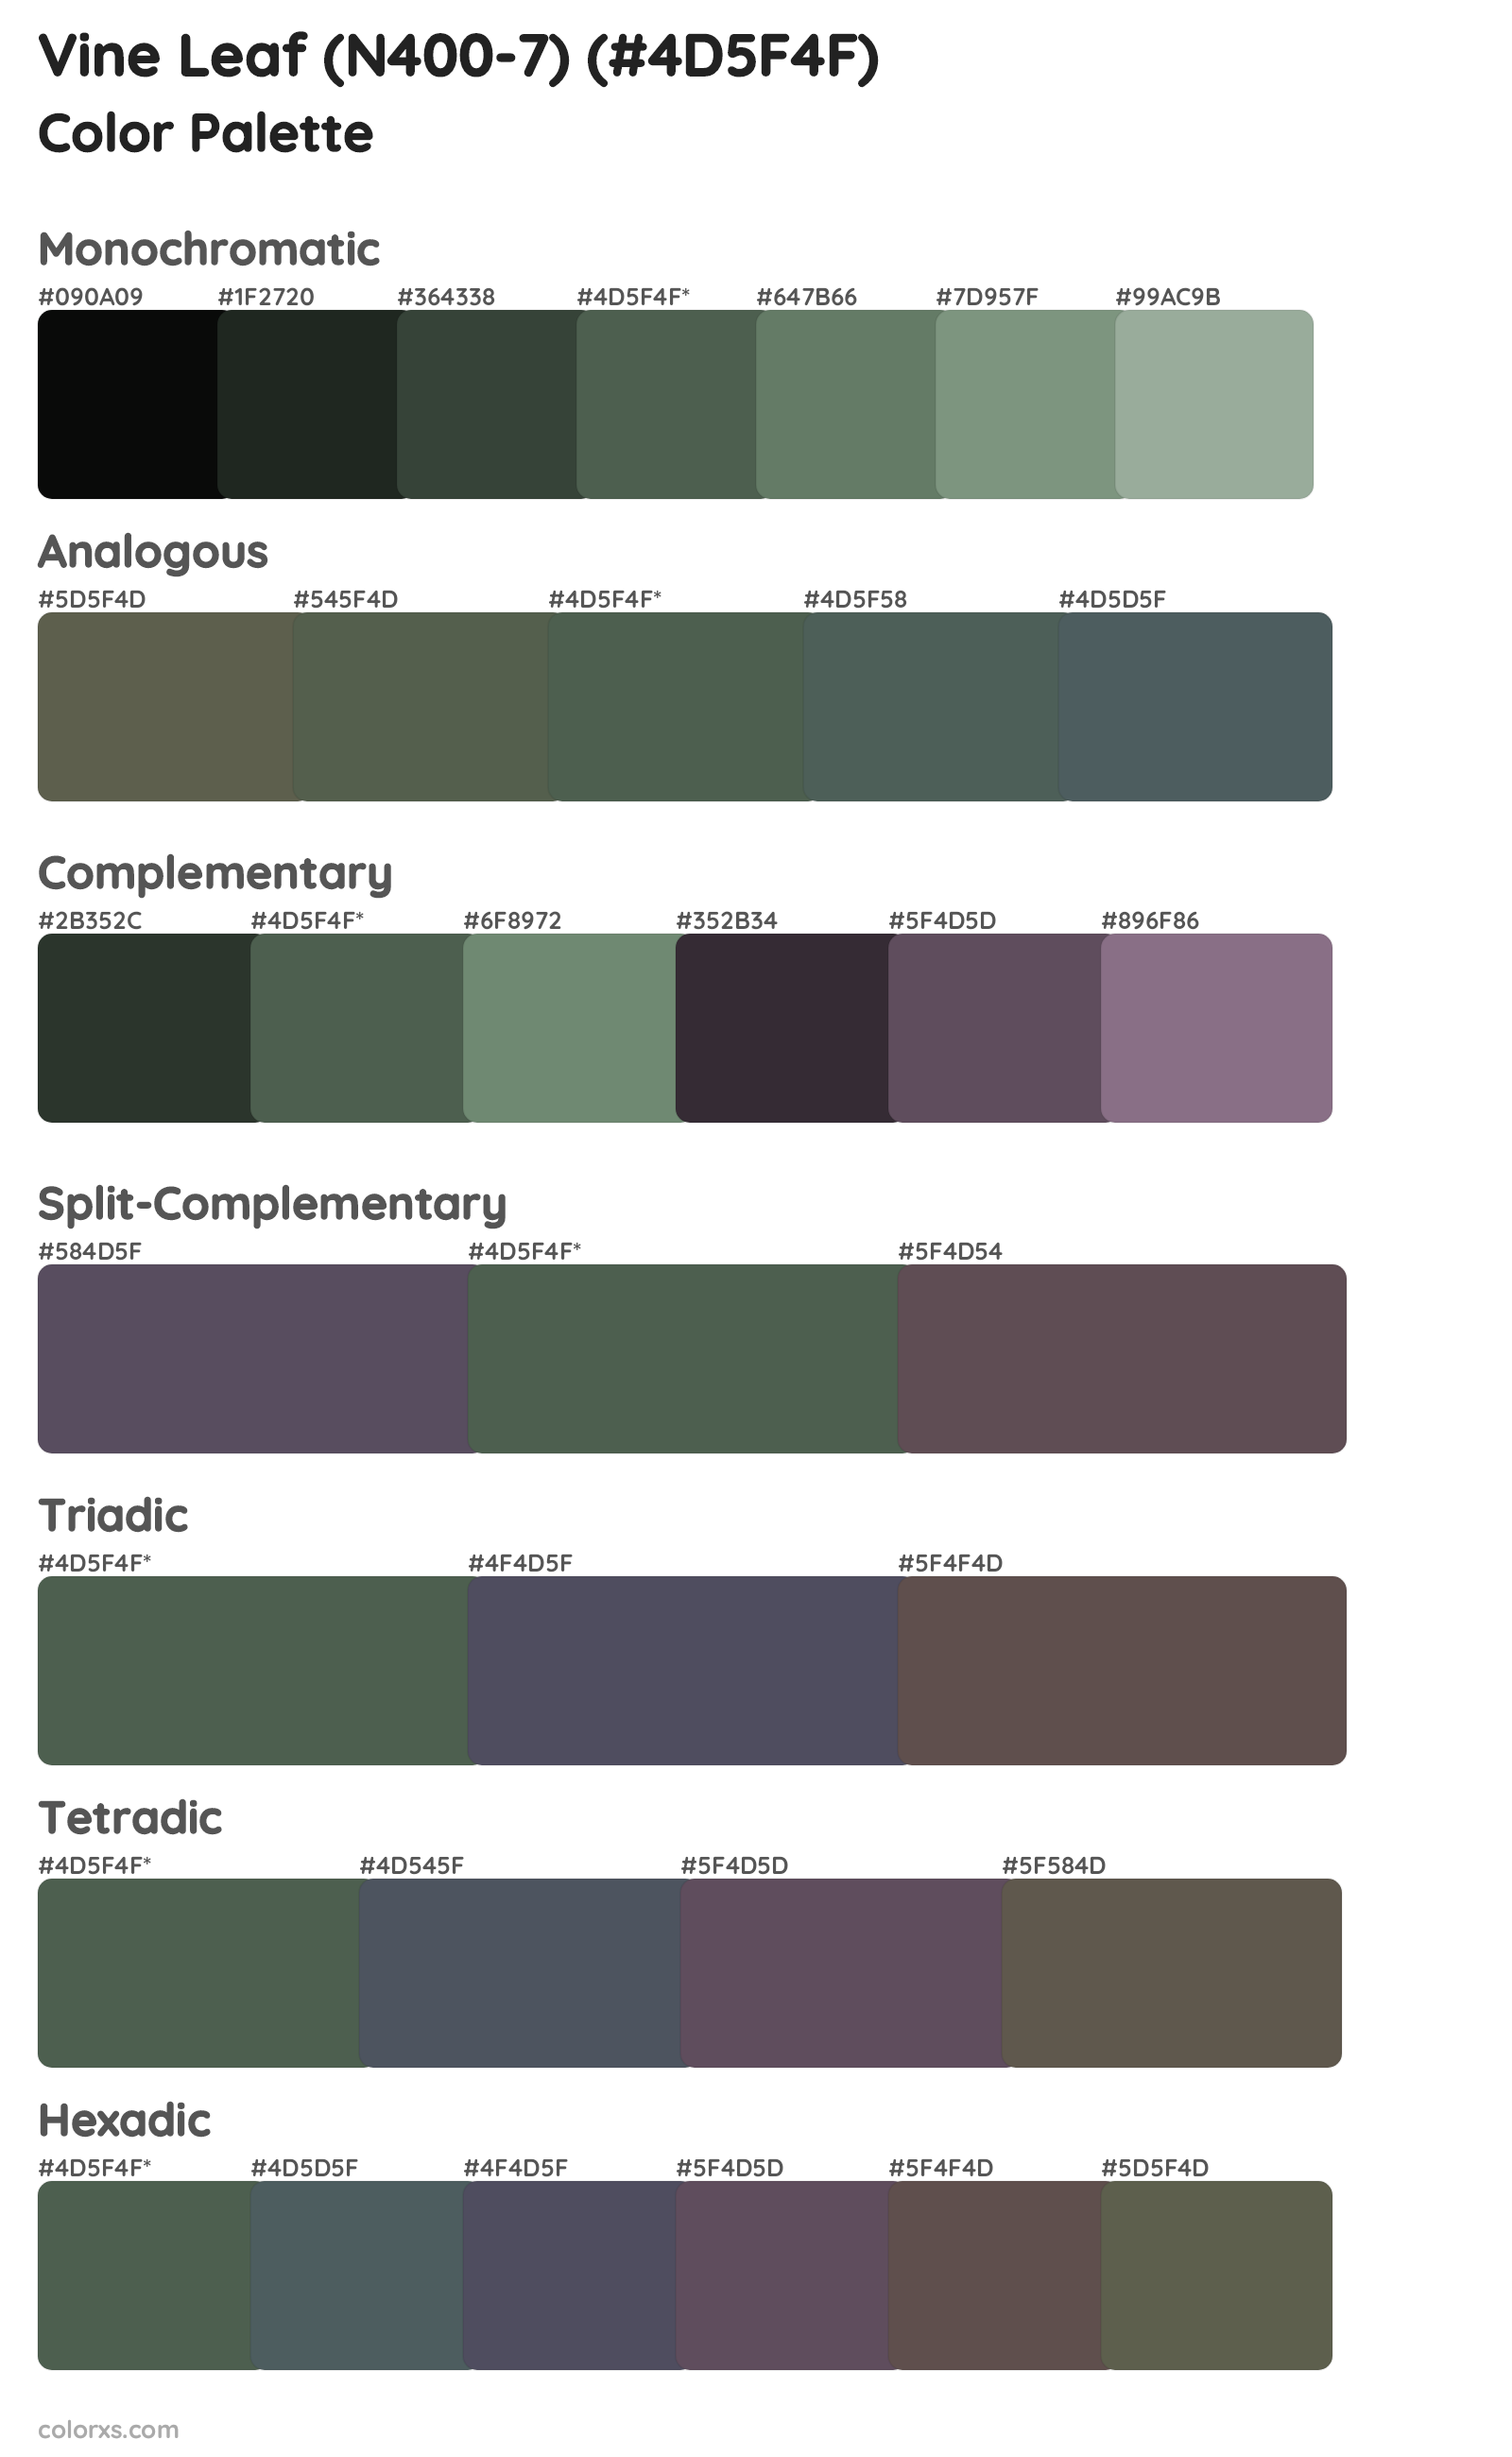 Vine Leaf (N400-7) Color Scheme Palettes